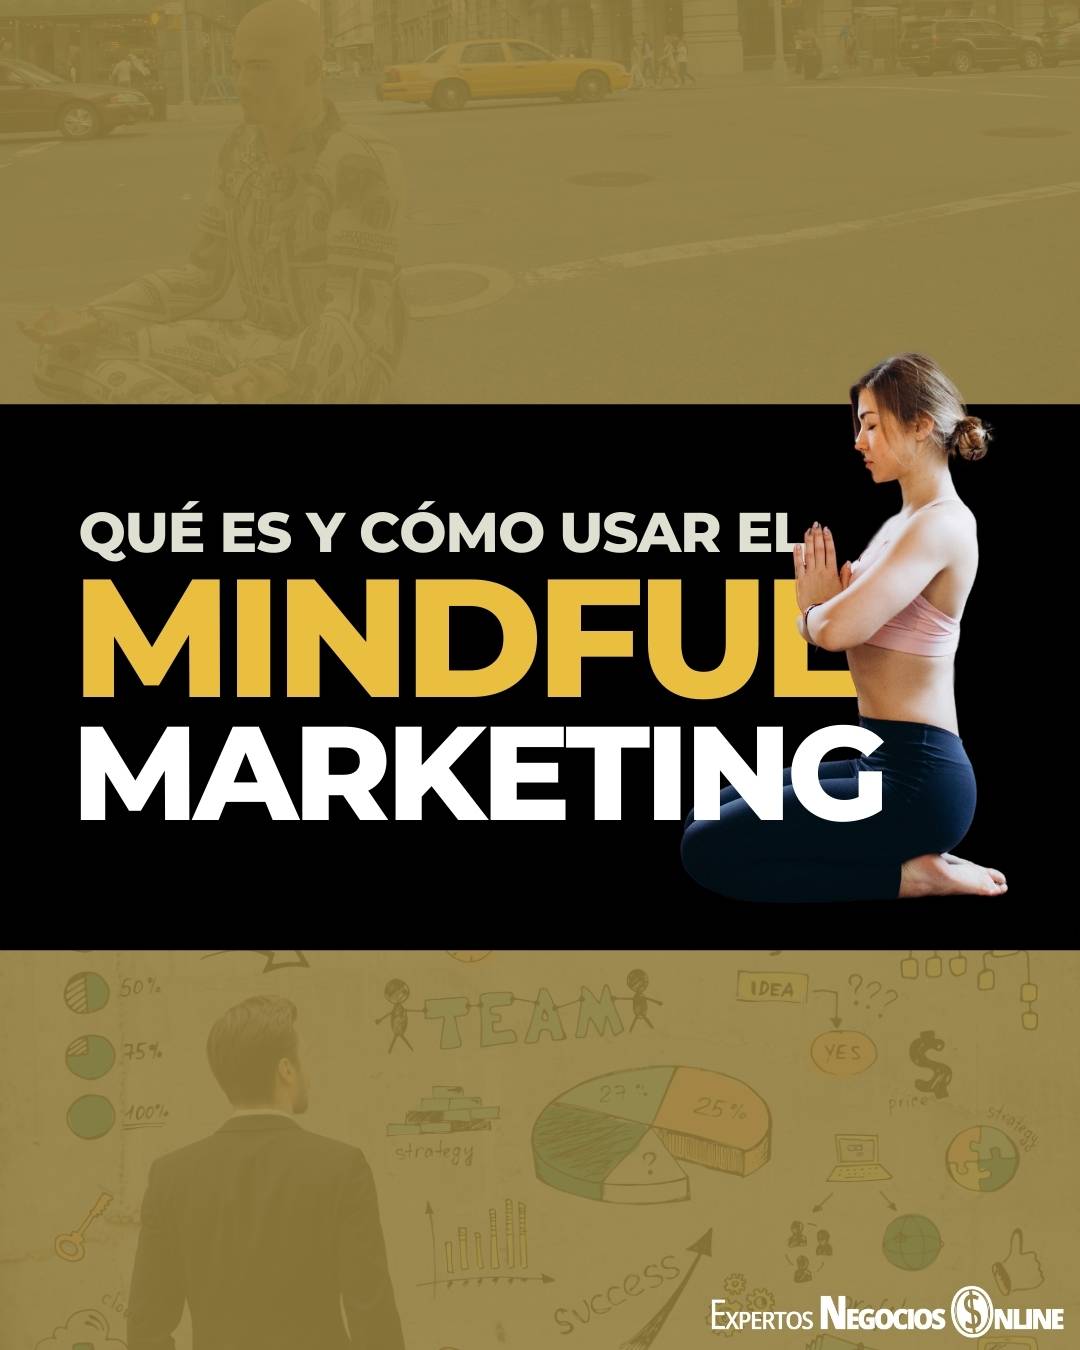 Mindful Marketing - Qué es, ventajas y ejemplos